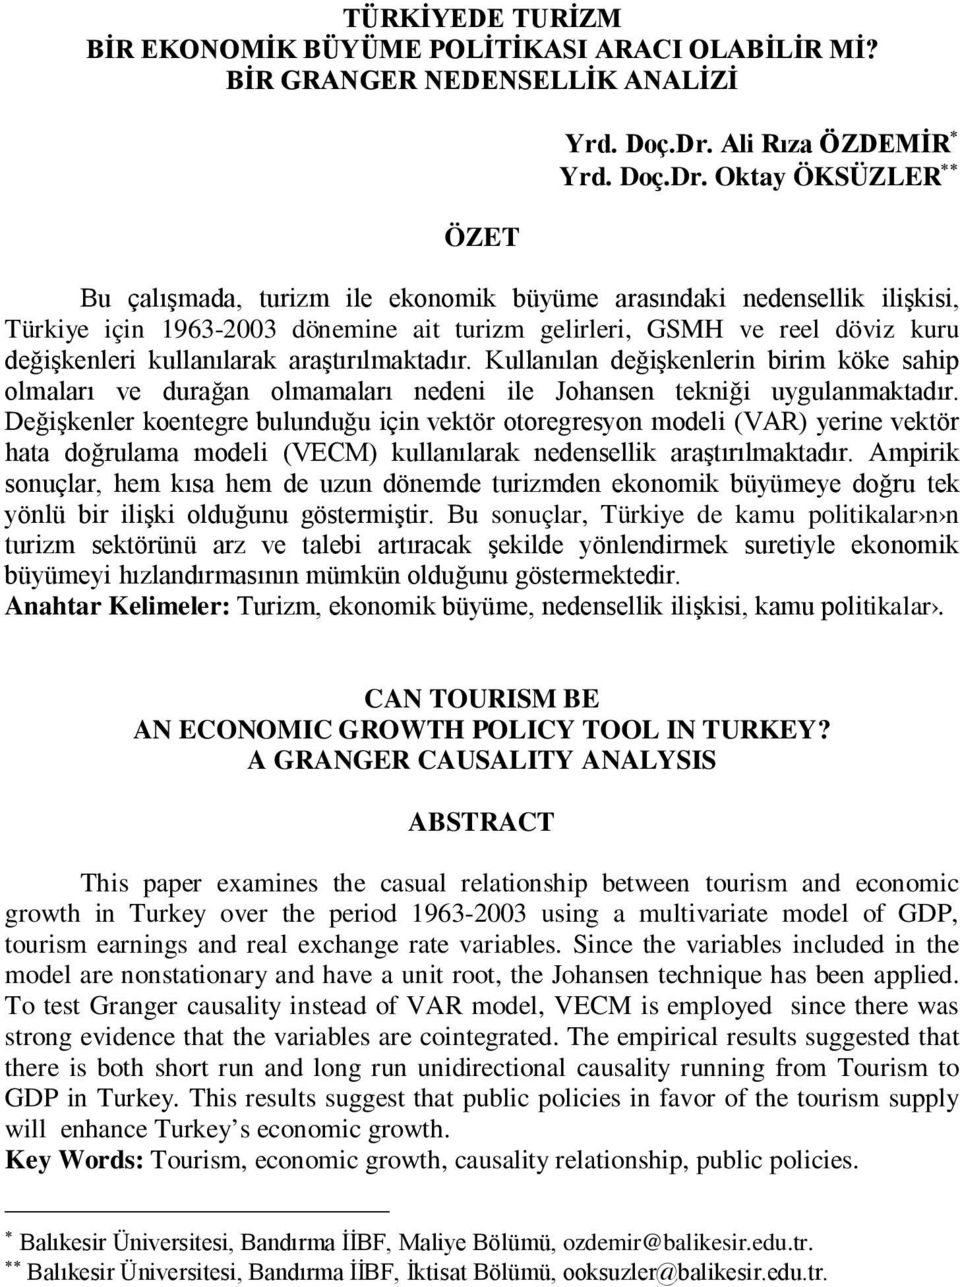 Oktay ÖKSÜZLER Bu çalışmada, turizm ile ekonomik büyüme arasındaki nedensellik ilişkisi, Türkiye için 1963-2003 dönemine ait turizm gelirleri, GSMH ve reel döviz kuru değişkenleri kullanılarak